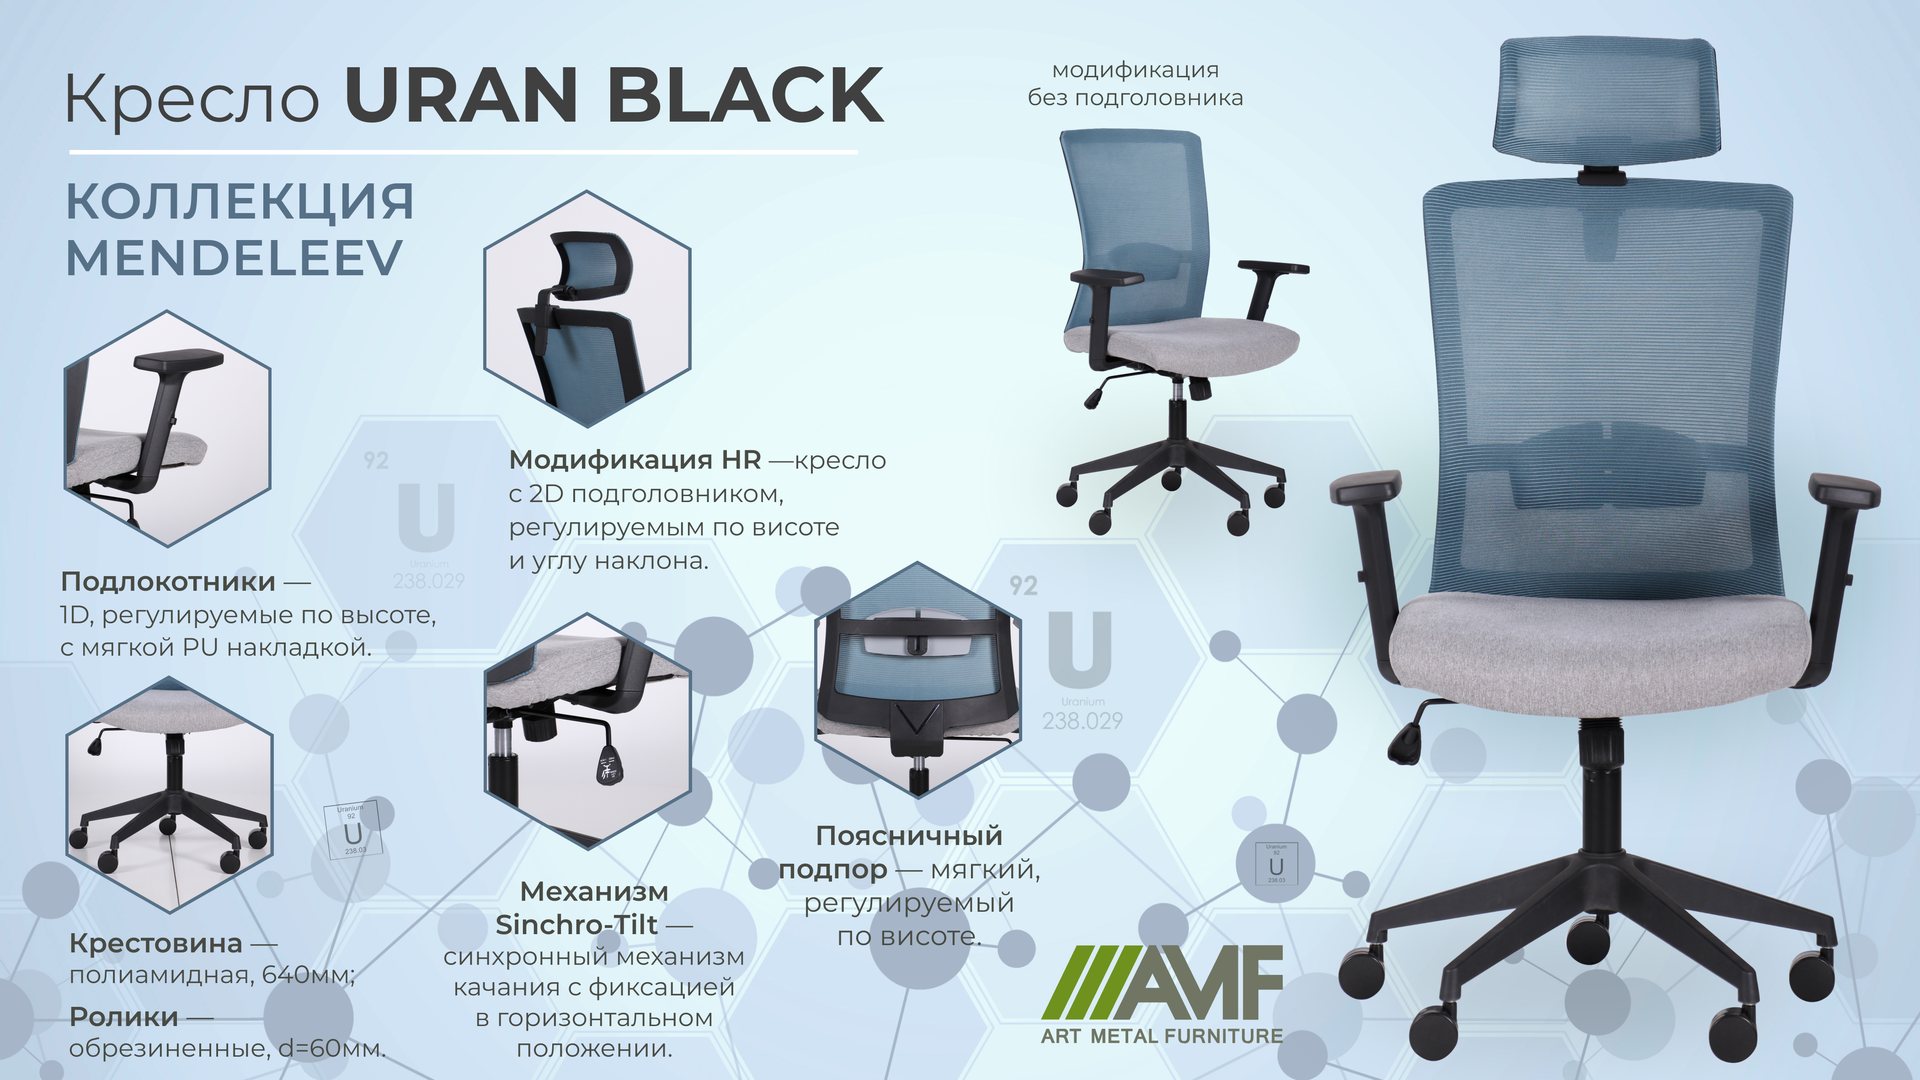 Кресло Uran black описание